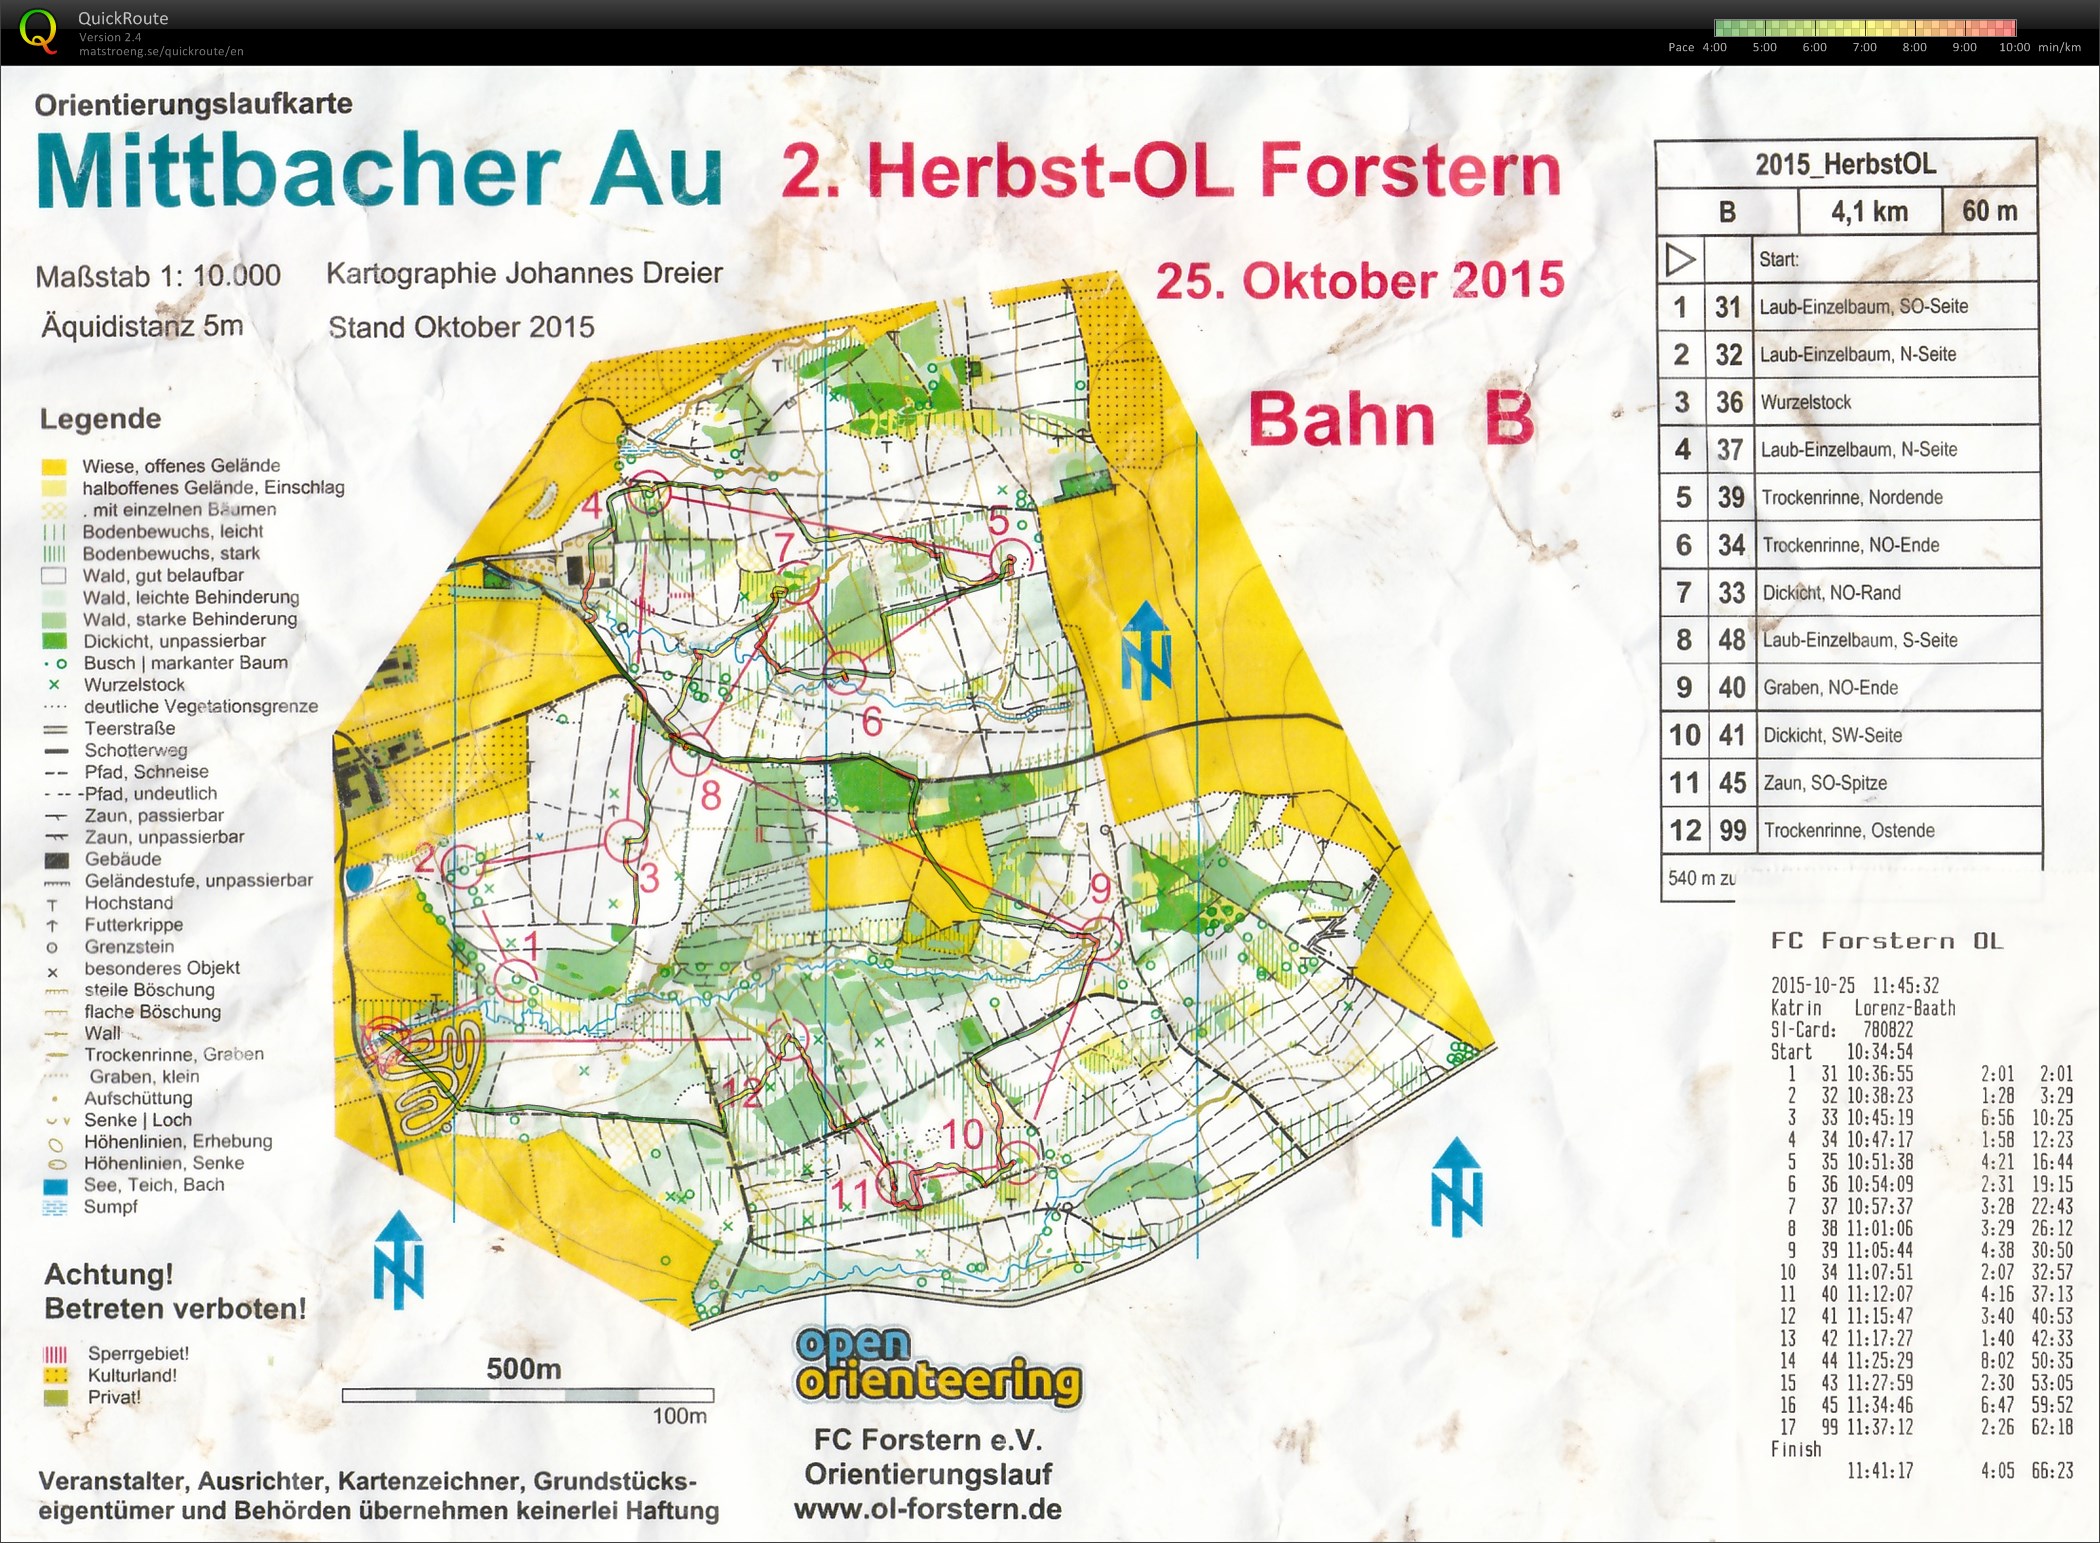 Herbst-OL Forstern (25/10/2015)